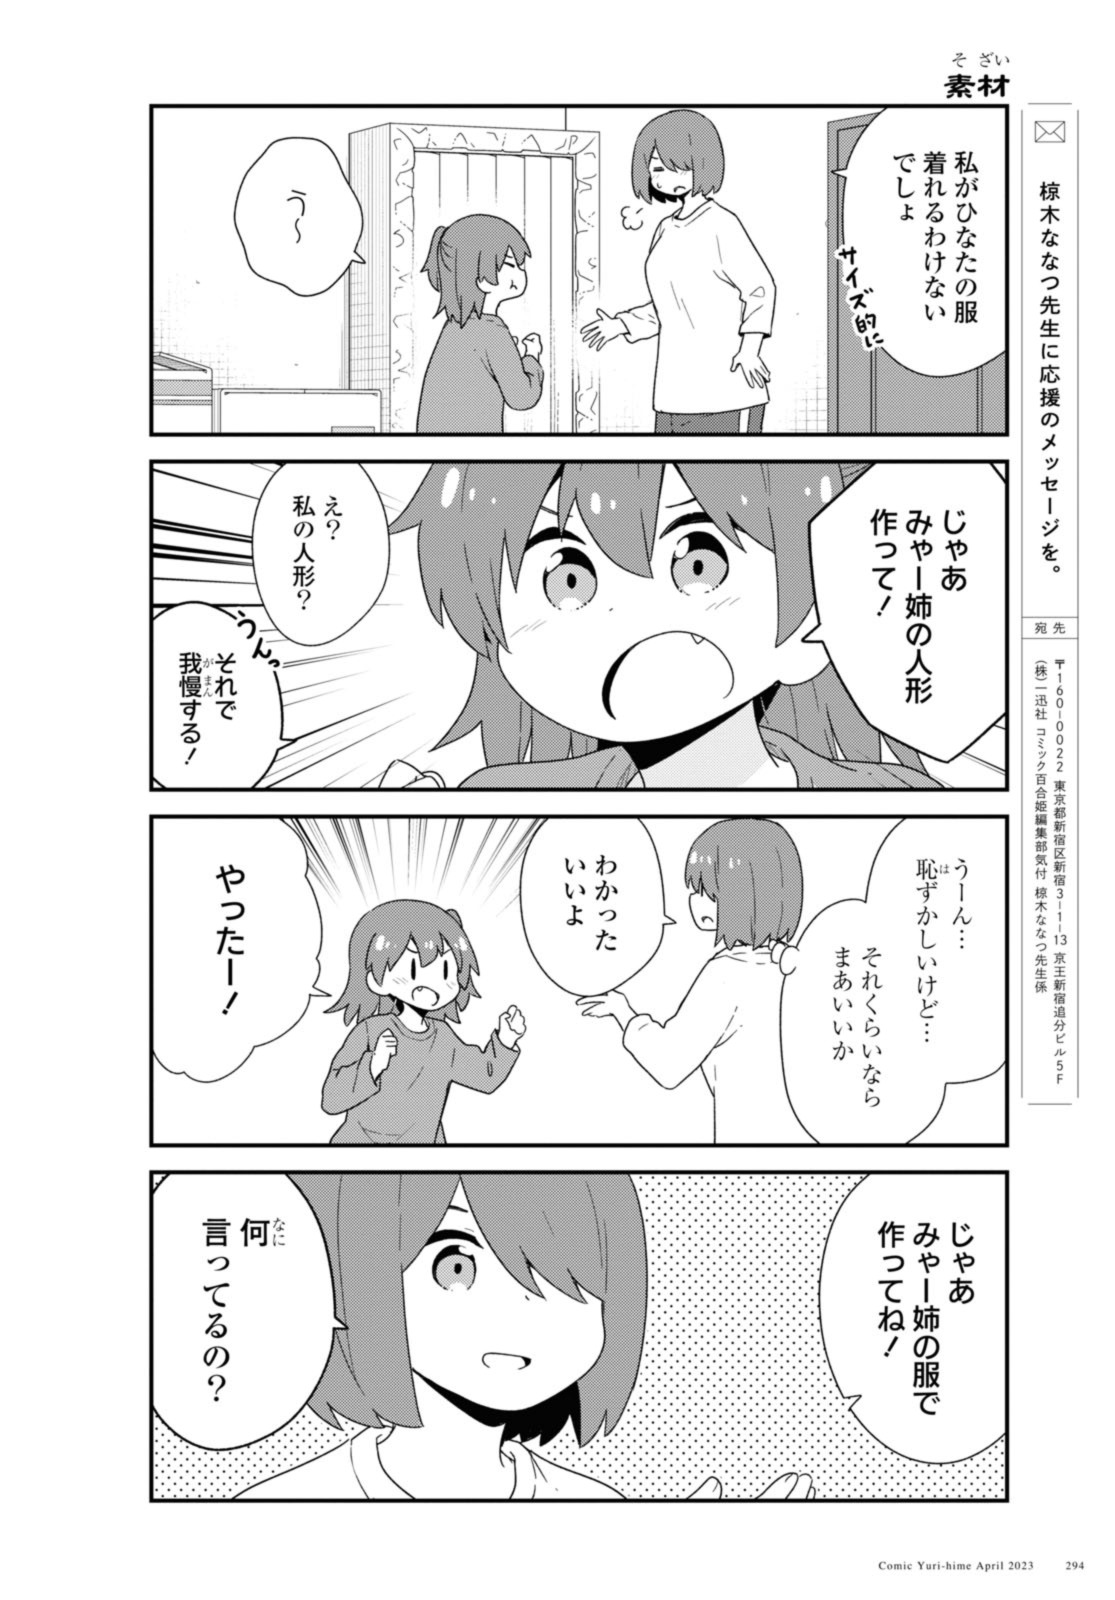 Watashi ni Tenshi ga Maiorita! - Chapter 104 - Page 14